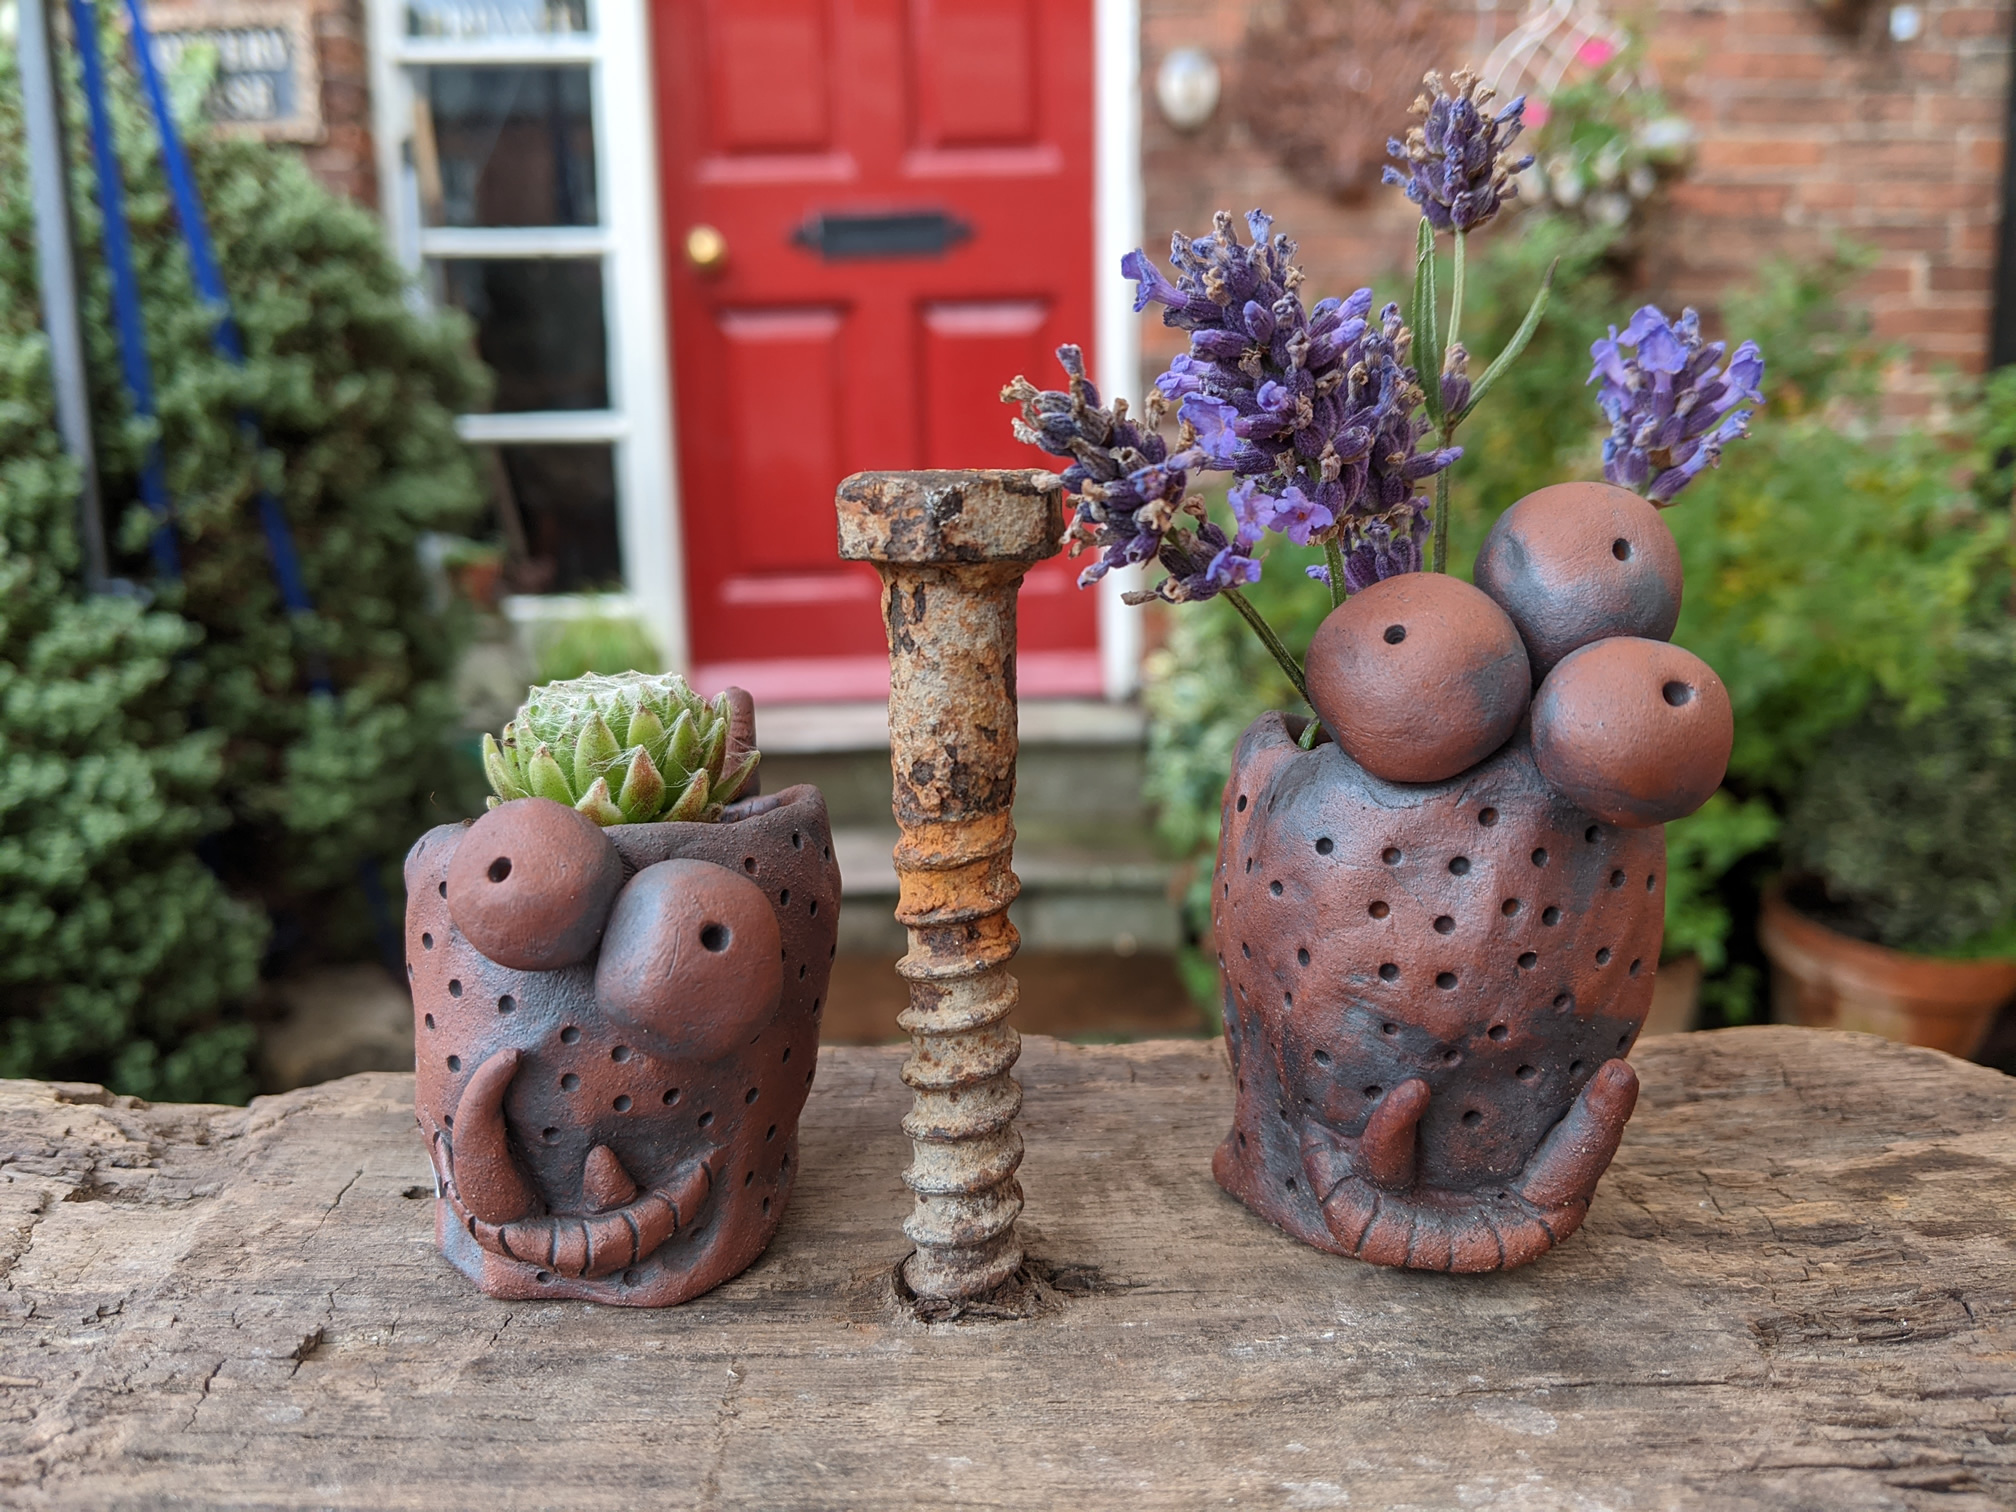 Ceramics by Nicola Rose